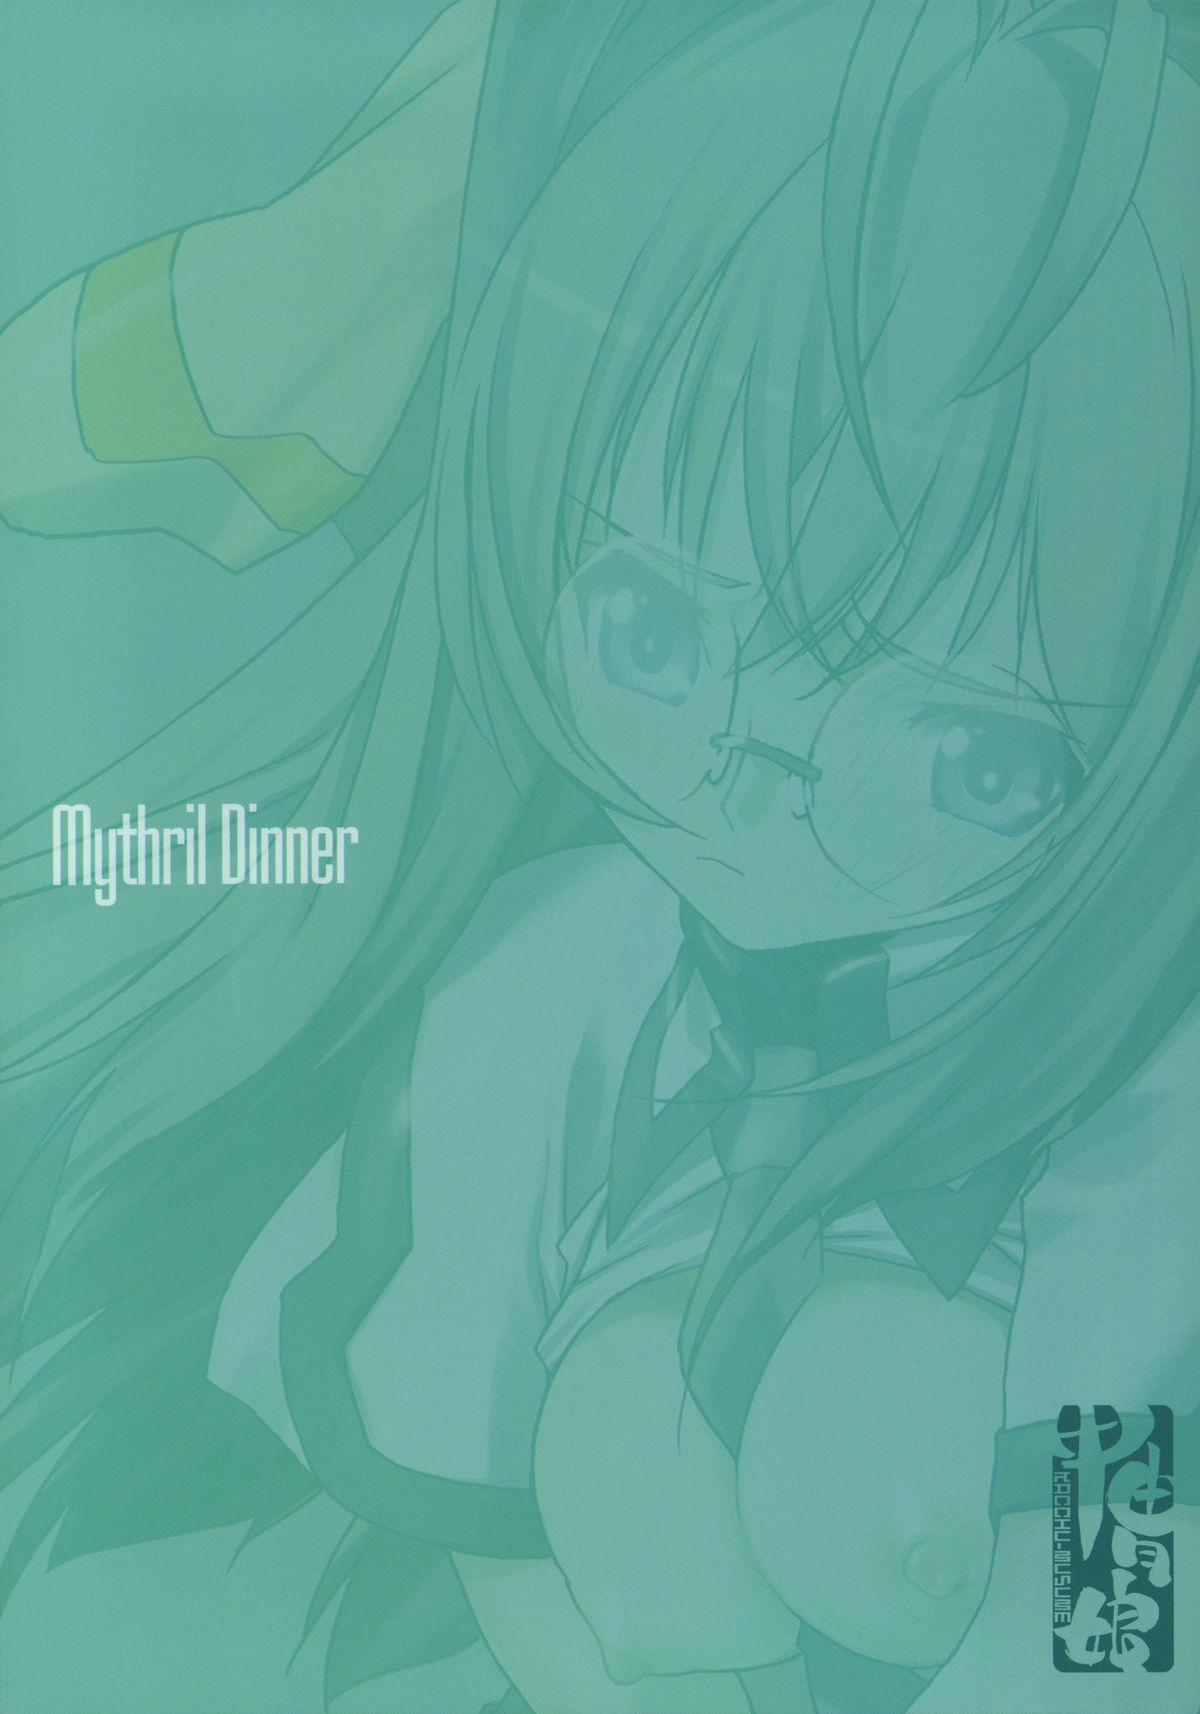 (C76) [Kacchuu Musume] Mythril Dinner (Sora wo Kakeru Shoujo) (C76)[甲冑娘] Mythril Dinner (宇宙をかける少女)